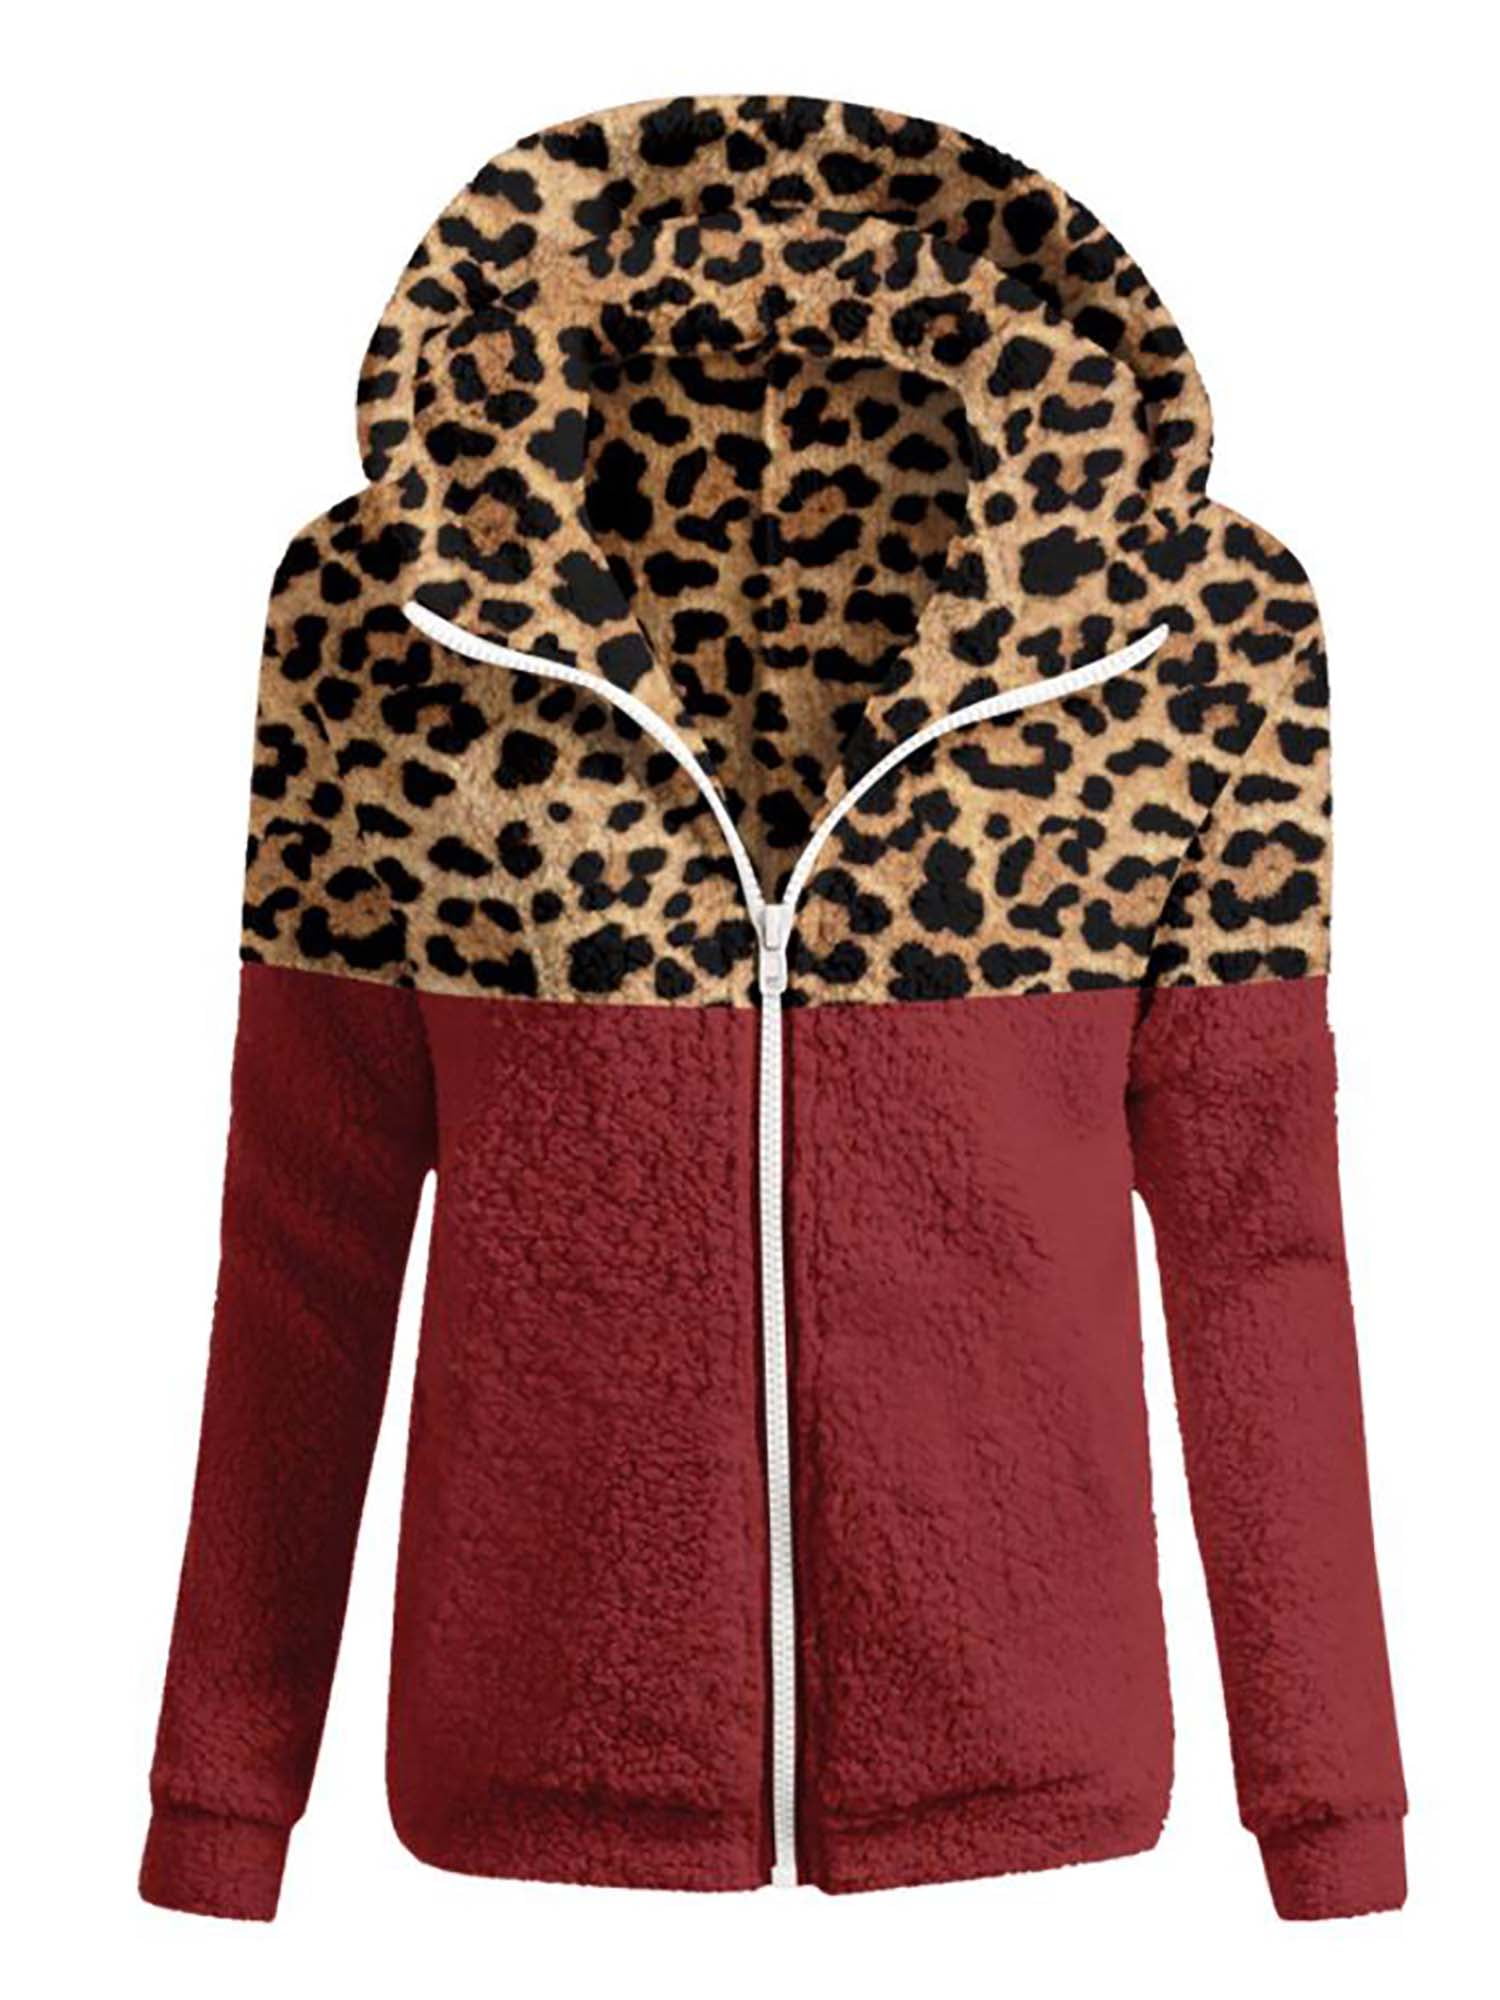 KANGMOON Womens Leopard Coat Casual Fleece Sherpa Fuzzy Lapel Cozy Shearling Zipper Winter Jacket with Pockets 